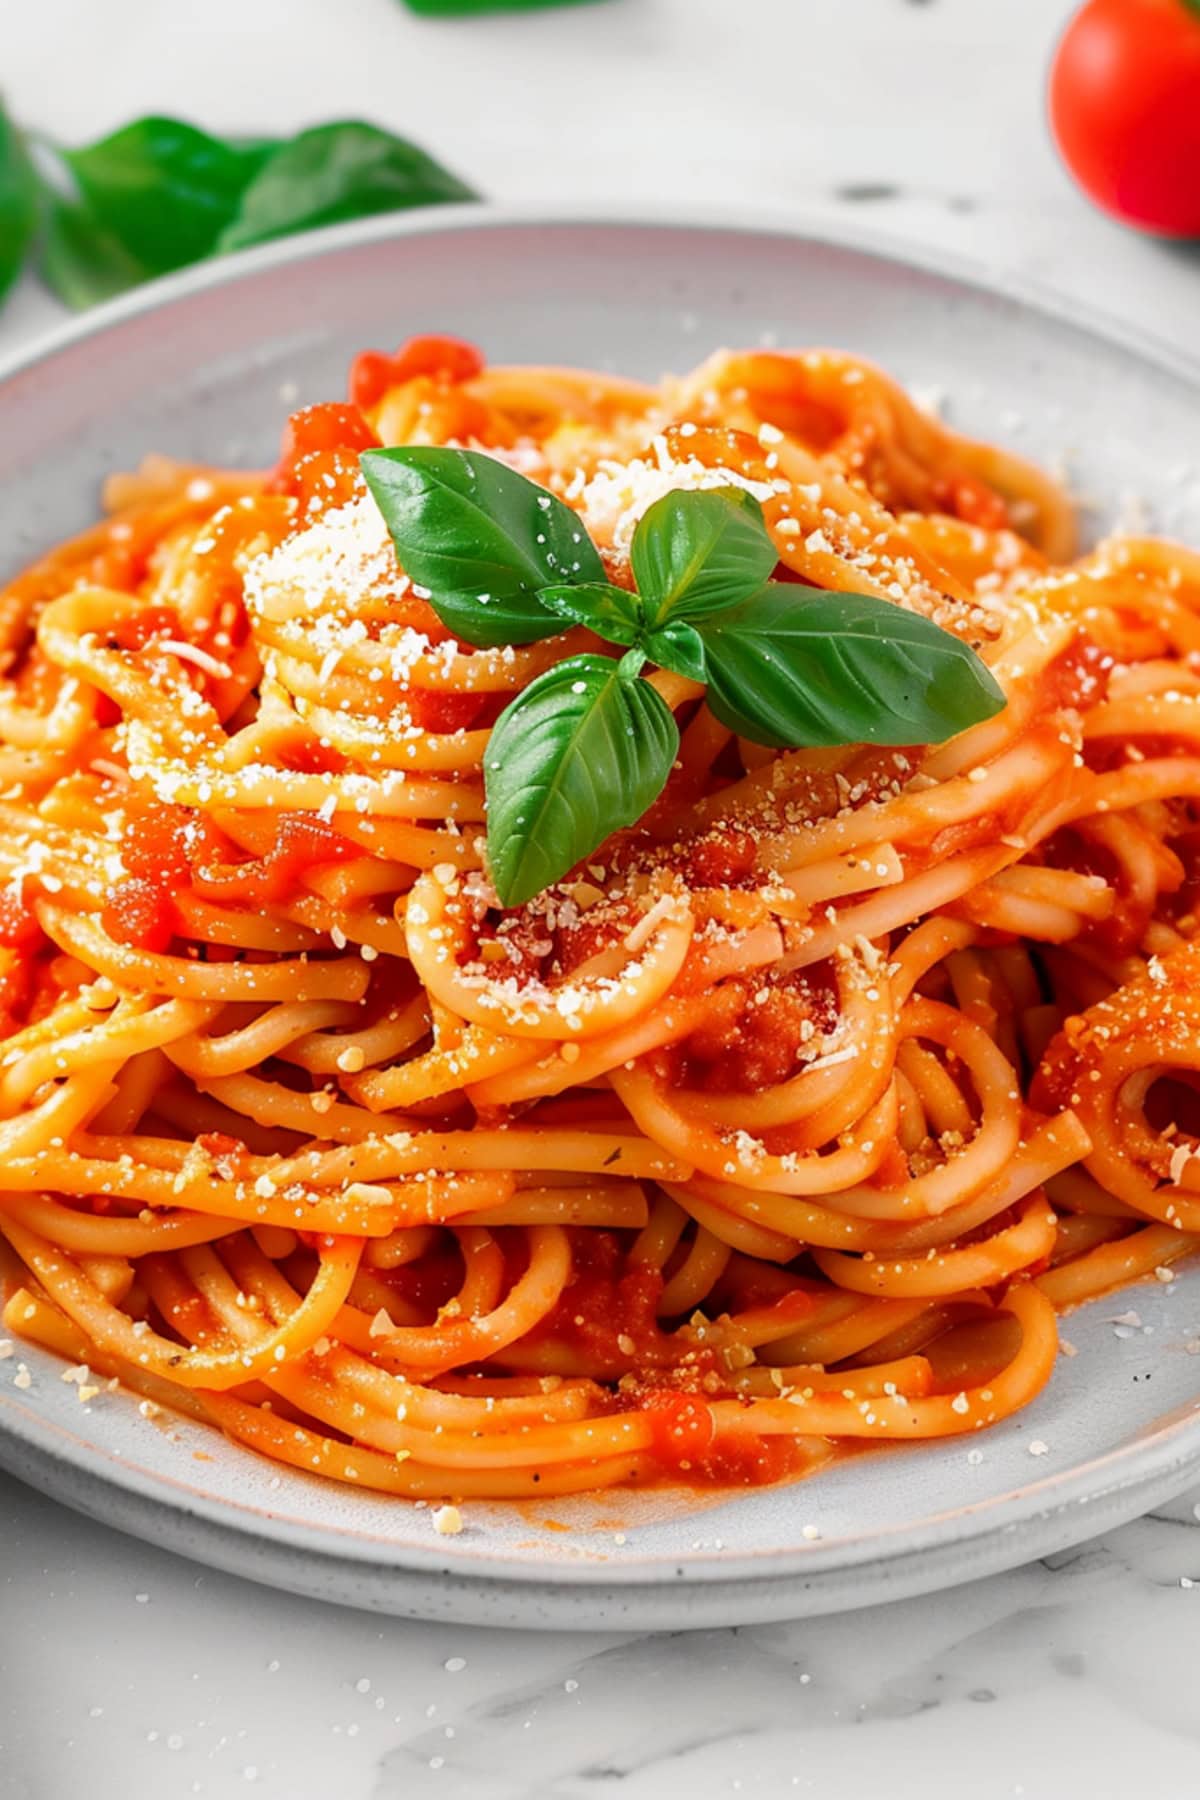 Elegant pasta pomodoro with spaghetti in tomato sauce on a white plate.